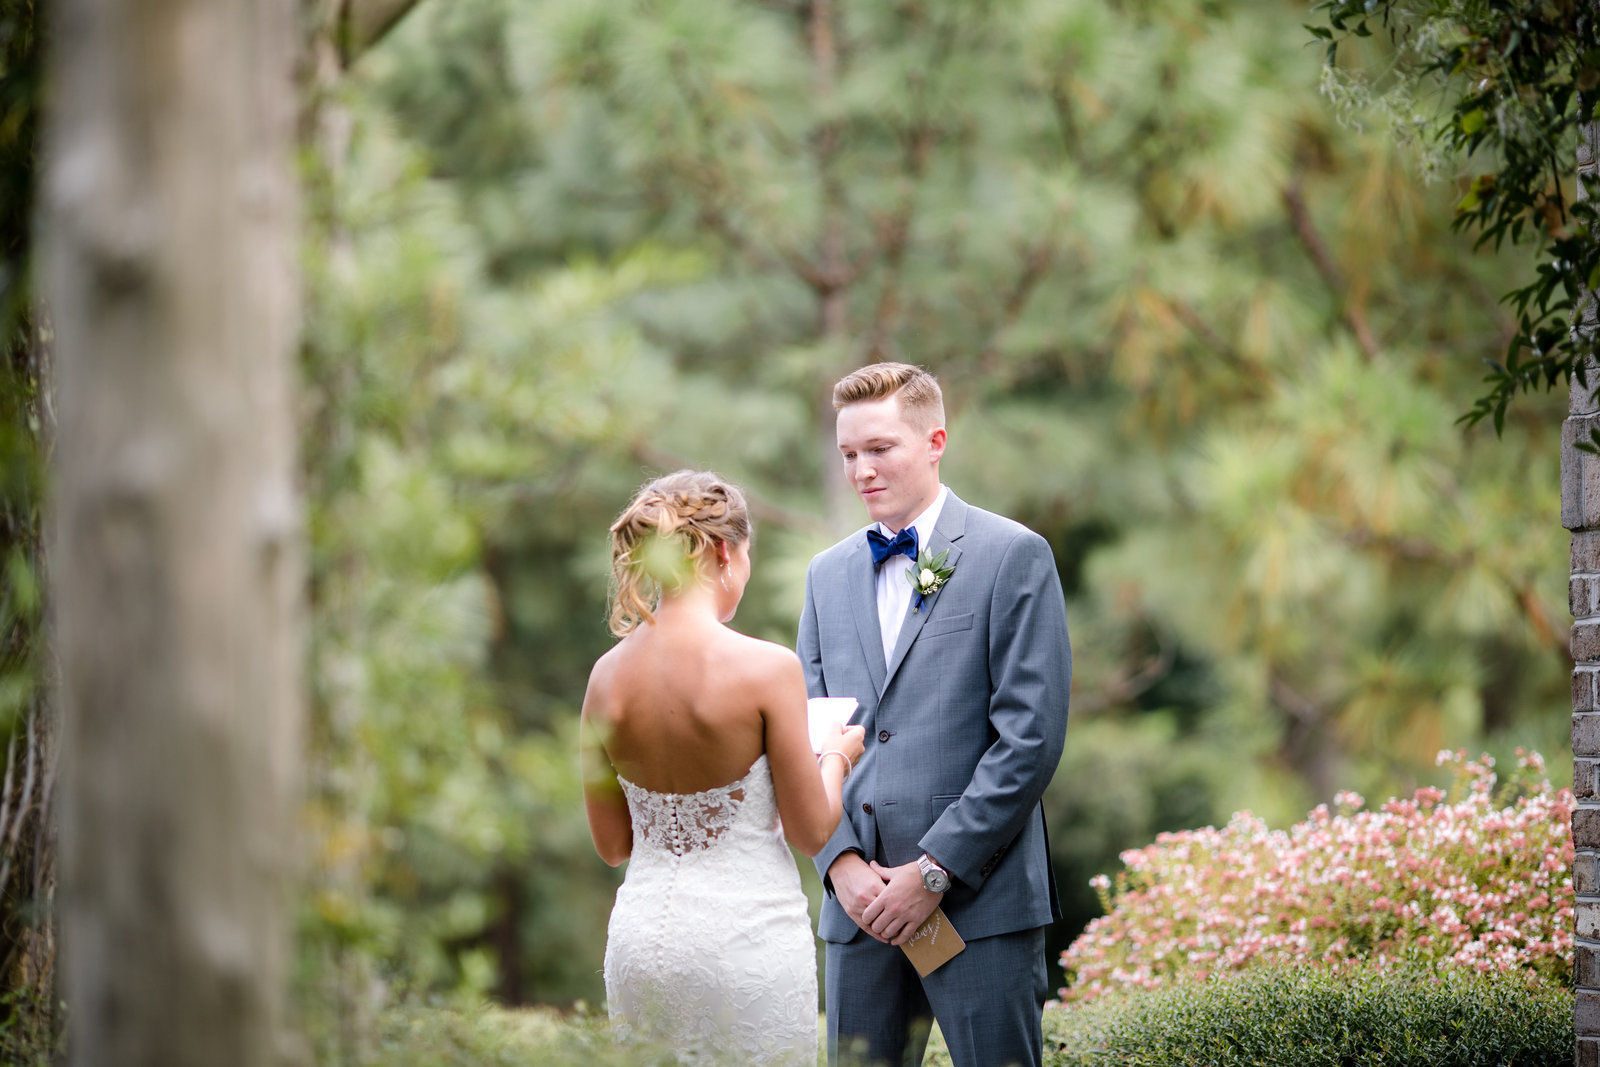 Photography by Tiffany - NC Wedding and Family Photographer - Pinehurst Arboretum Wedding - September 14, 2019 - 1-2